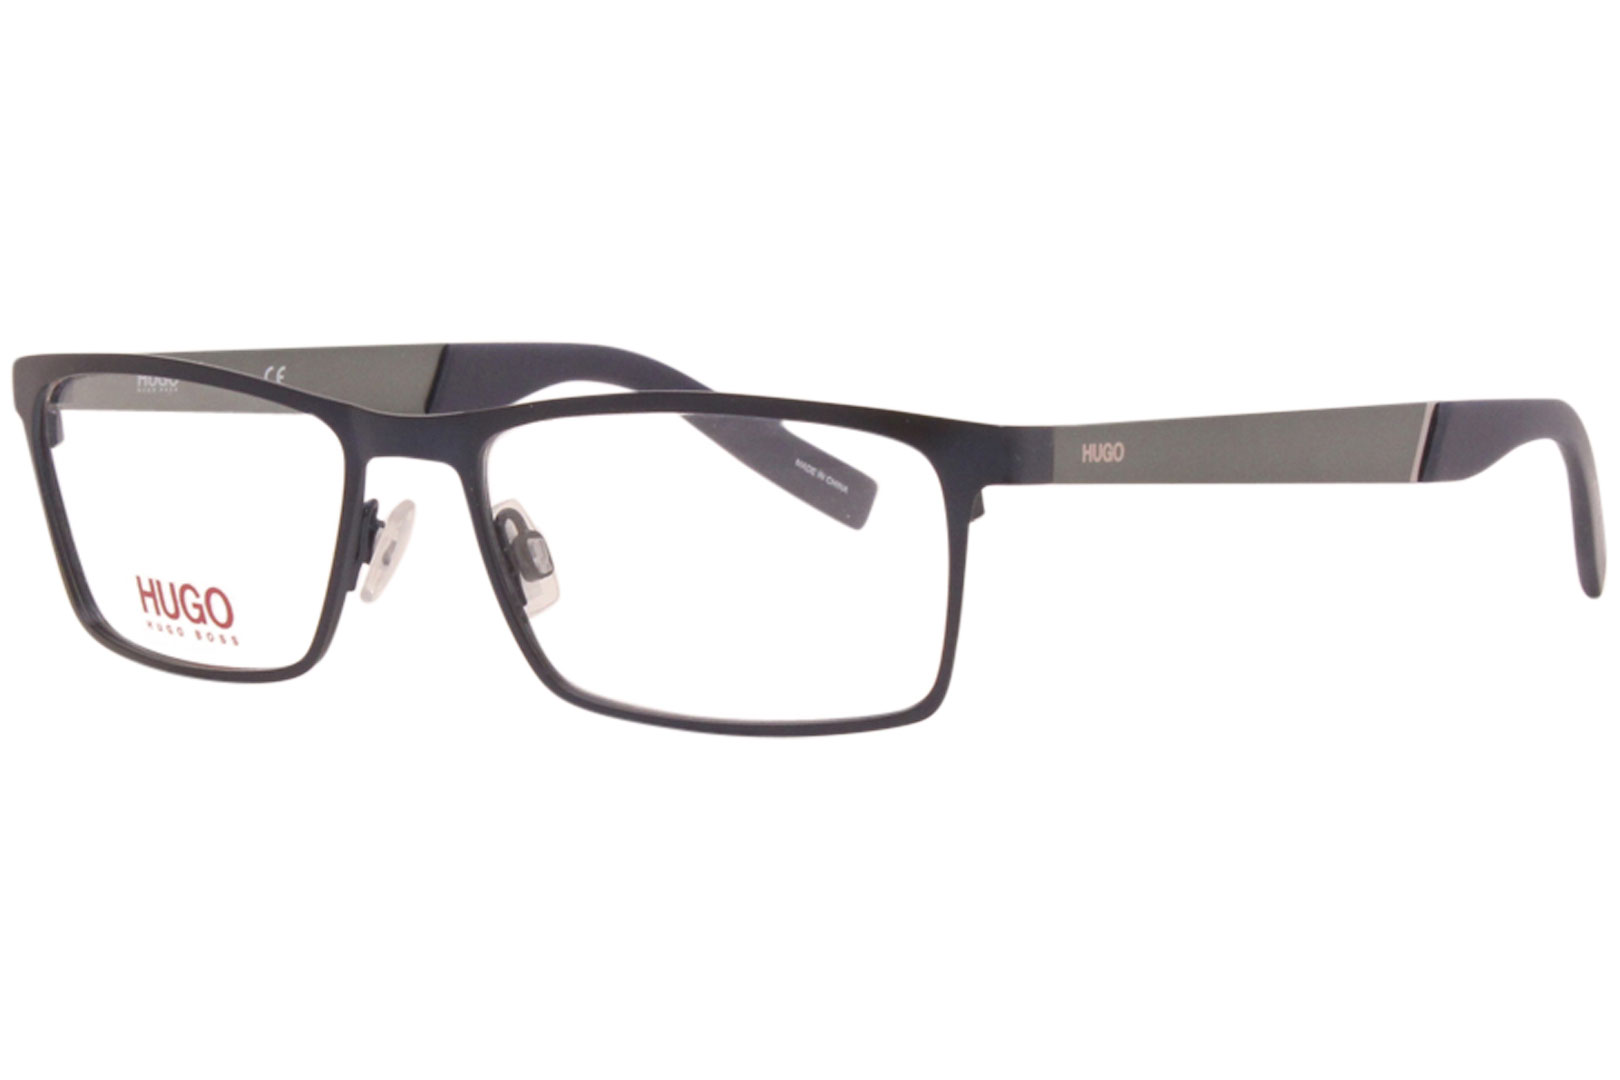 Hugo Boss Eyeglasses Men's HG-0228 FLL Matte Blue 54-17-140mm ...